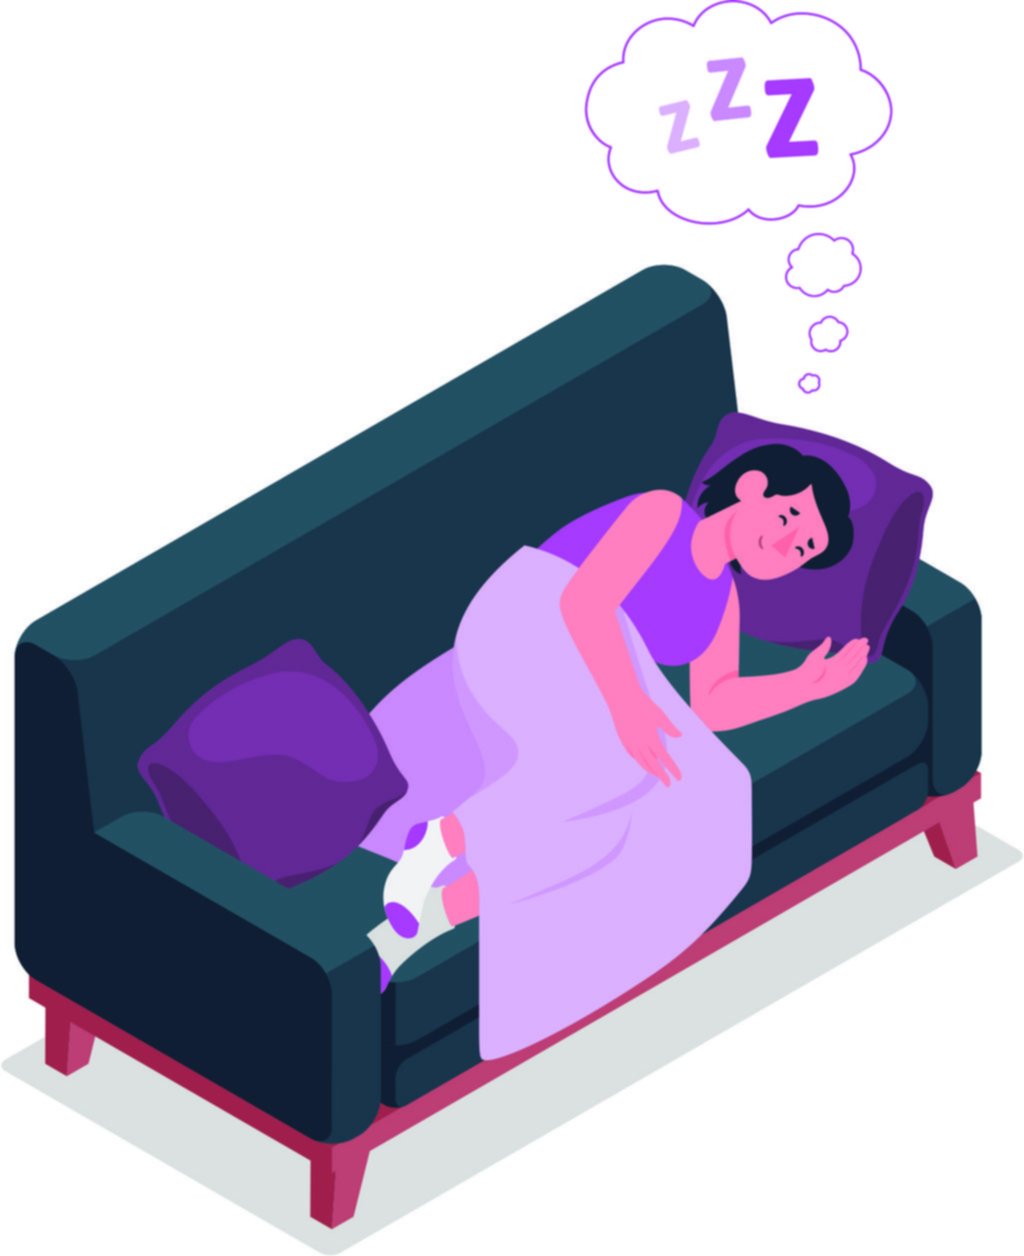 Sueño: la importancia de dormir bien en tiempos convulsionados